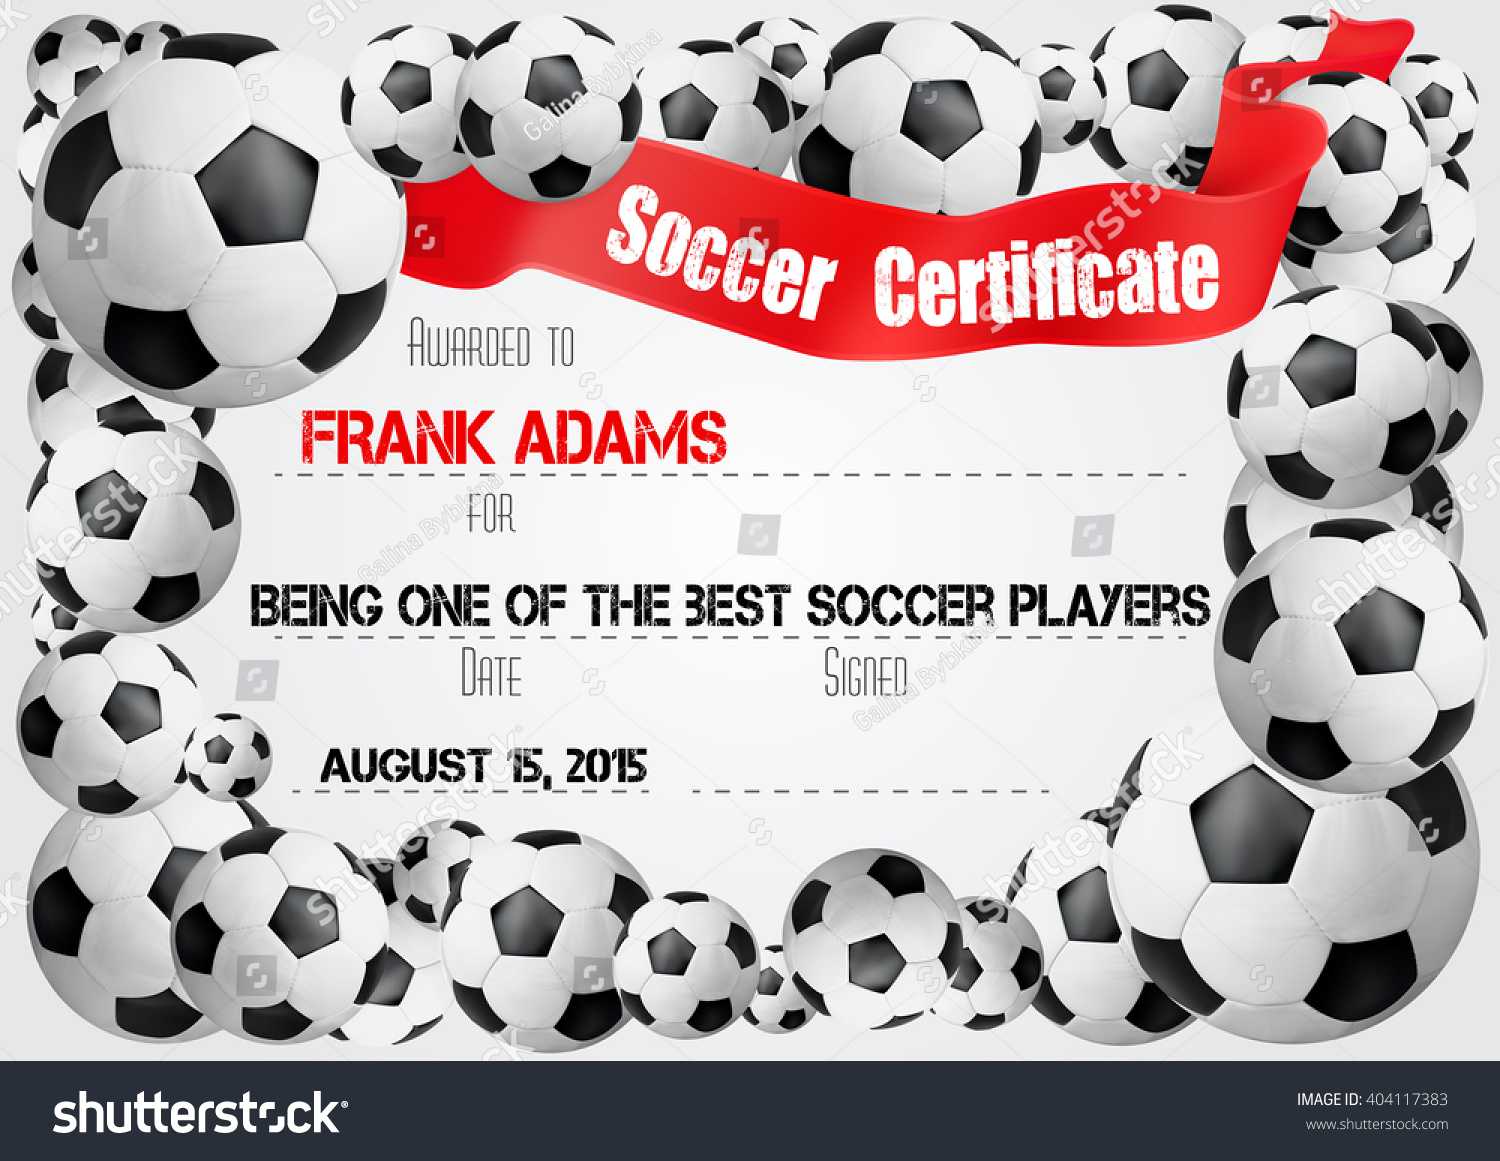 Soccer Certificate Template Football Ball Icons Stock Vector Regarding Soccer Certificate Template